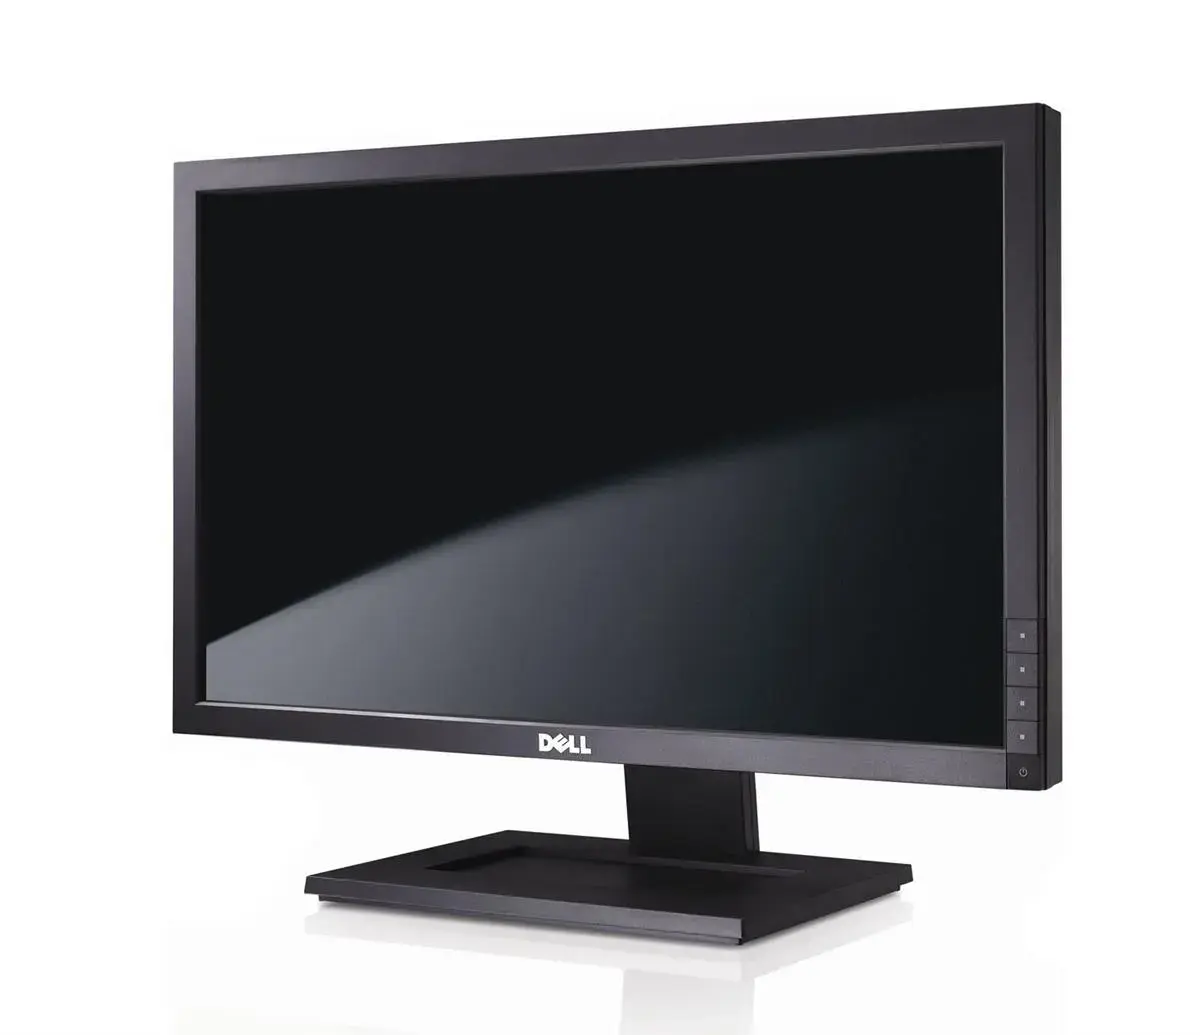 468-7415 Dell 22-inch E2210 (1680 x 1050) Widescreen 60Hz LCD Monitor